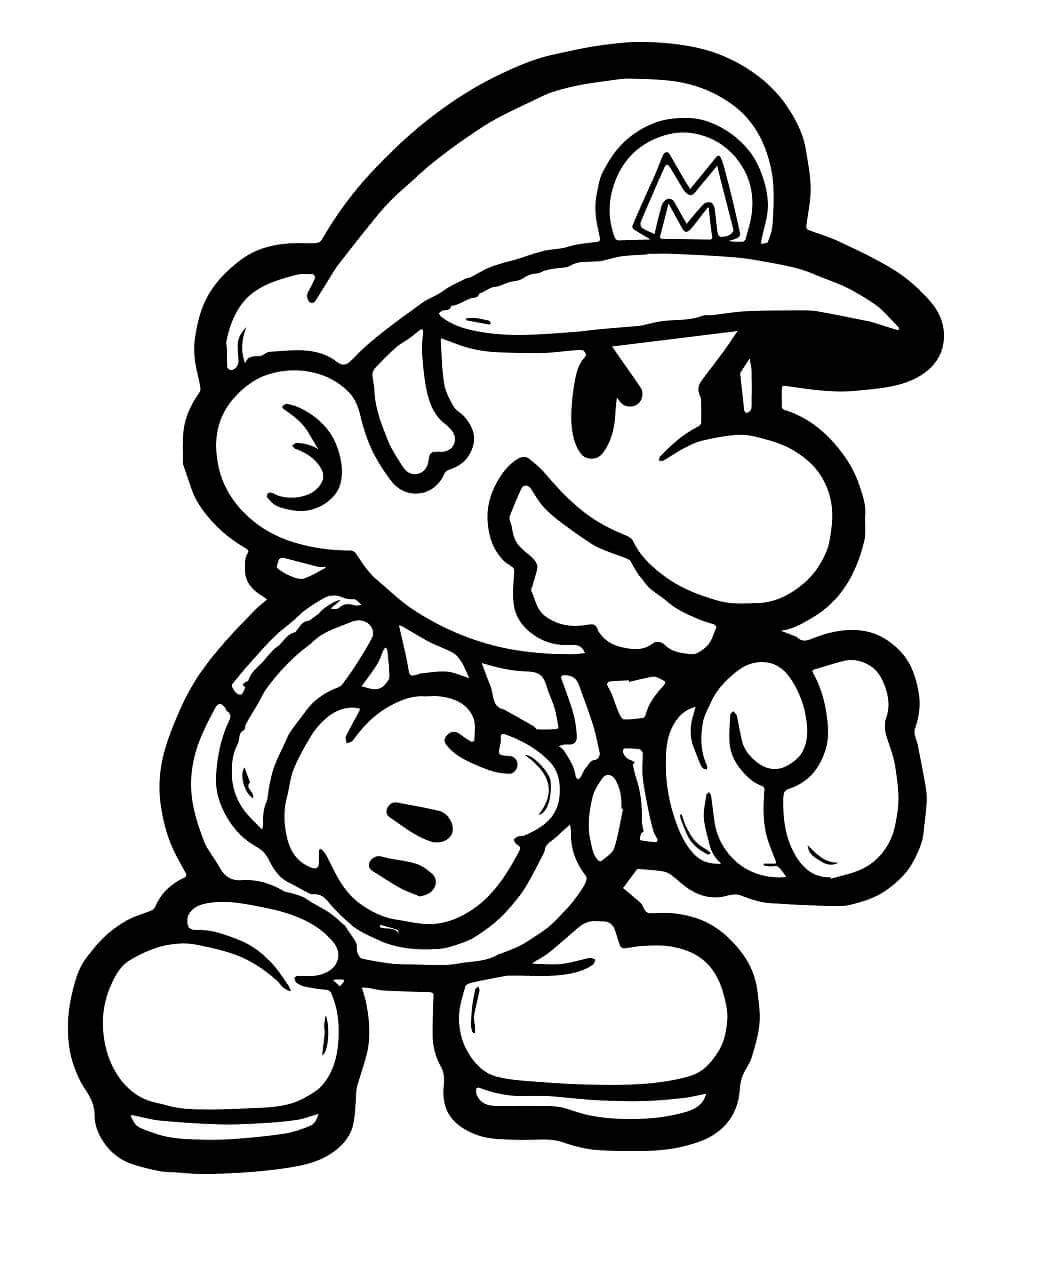 Mario Kickboxing